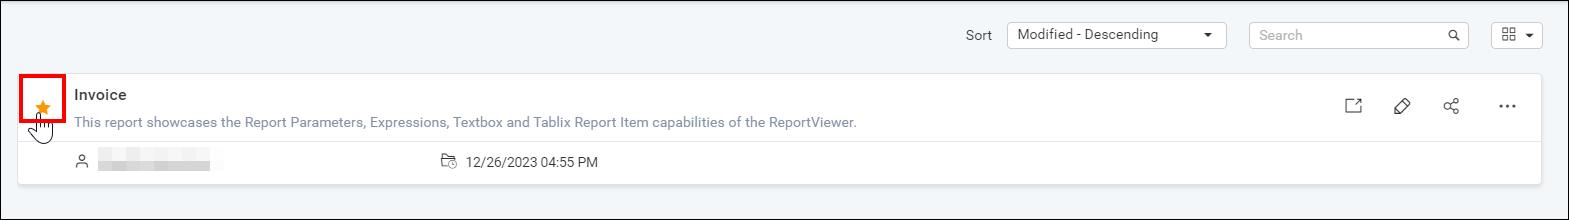 Remove Favorite Report